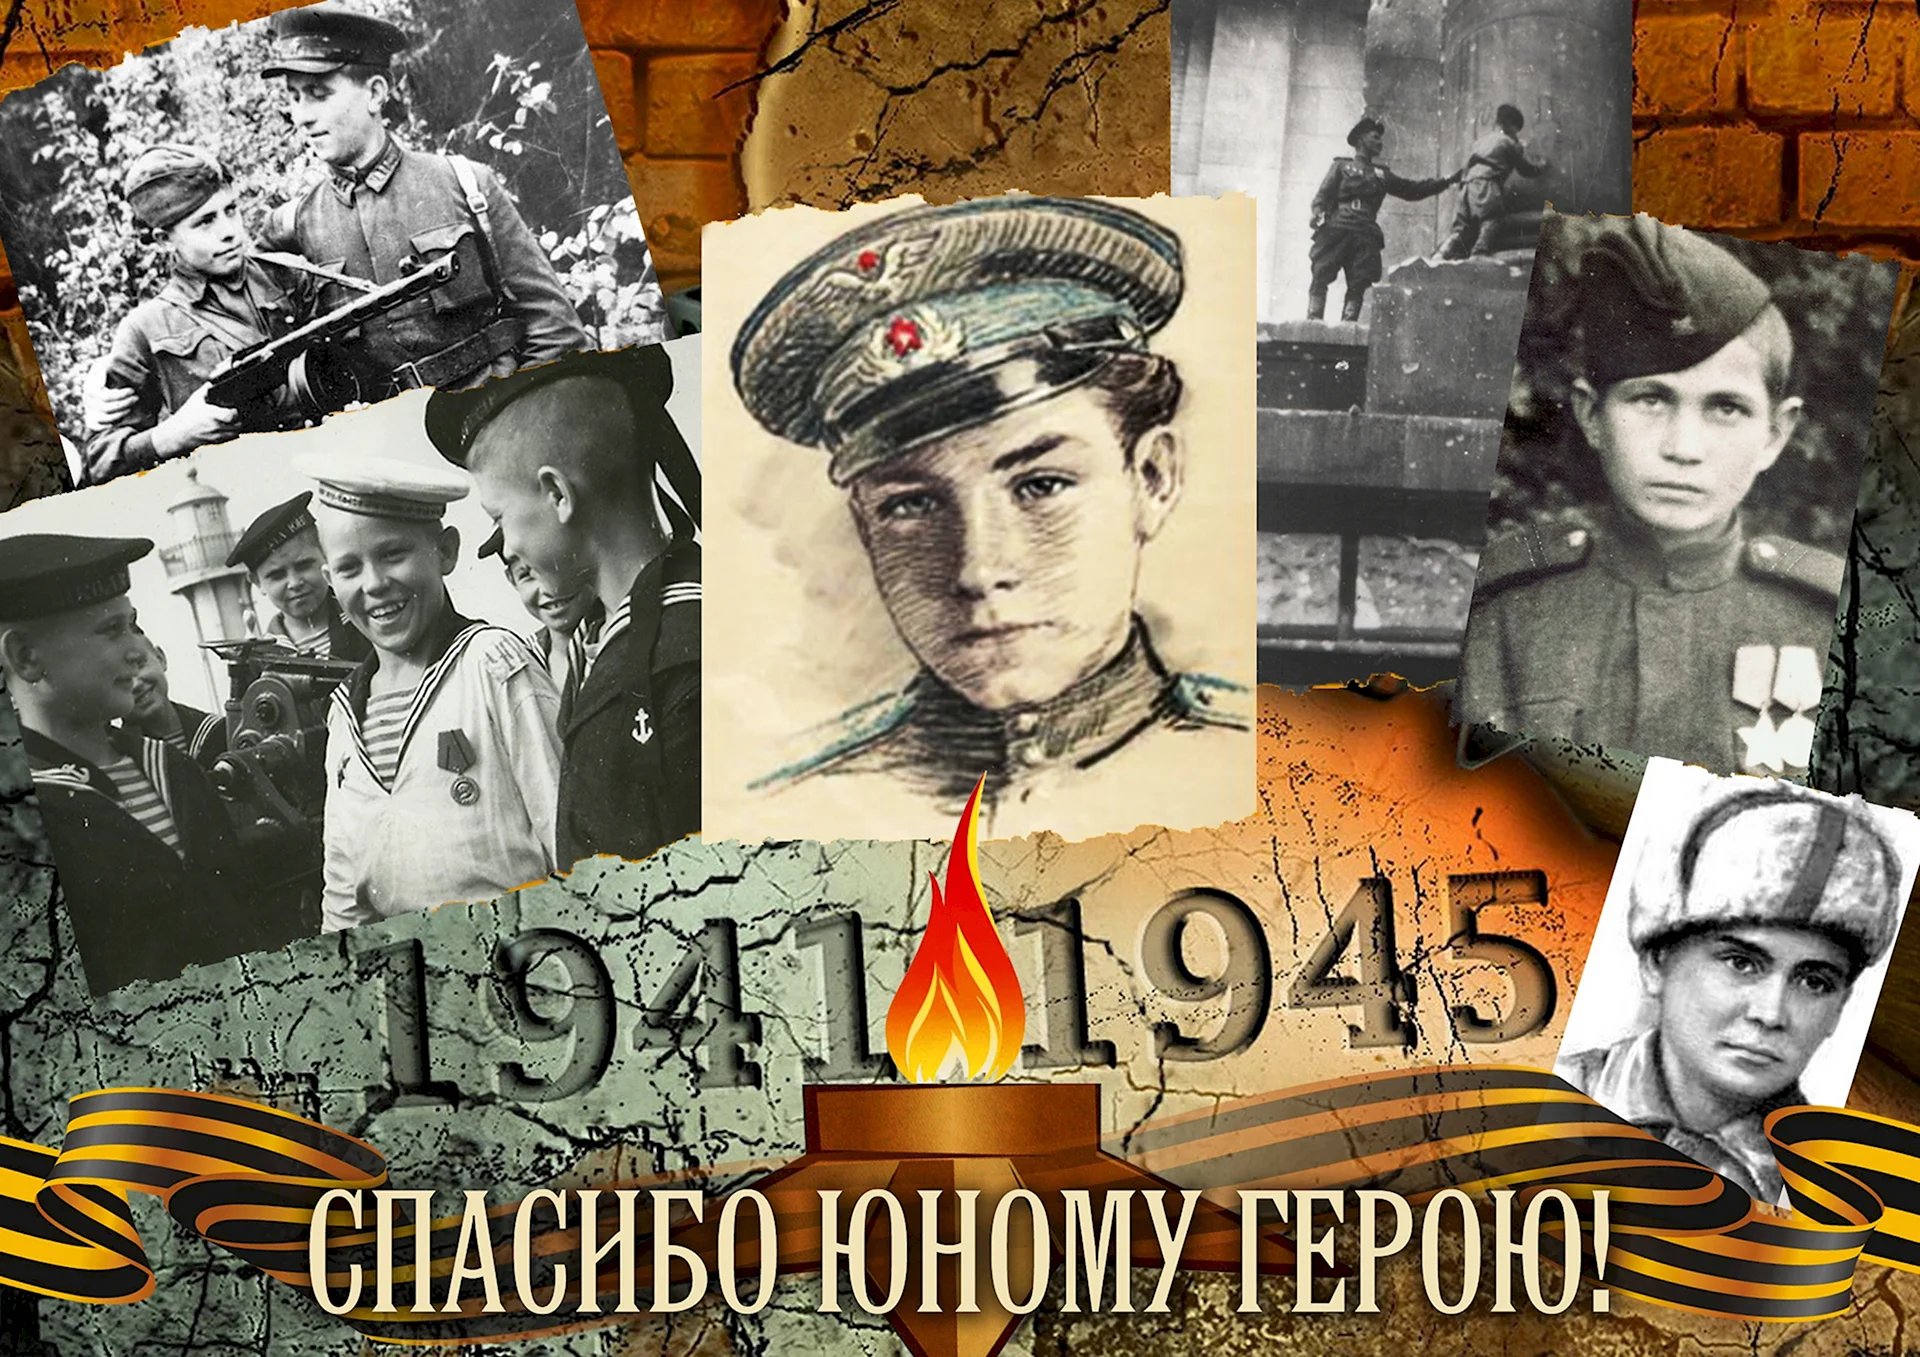 Герои Великой Отечественной войны 1941-1945